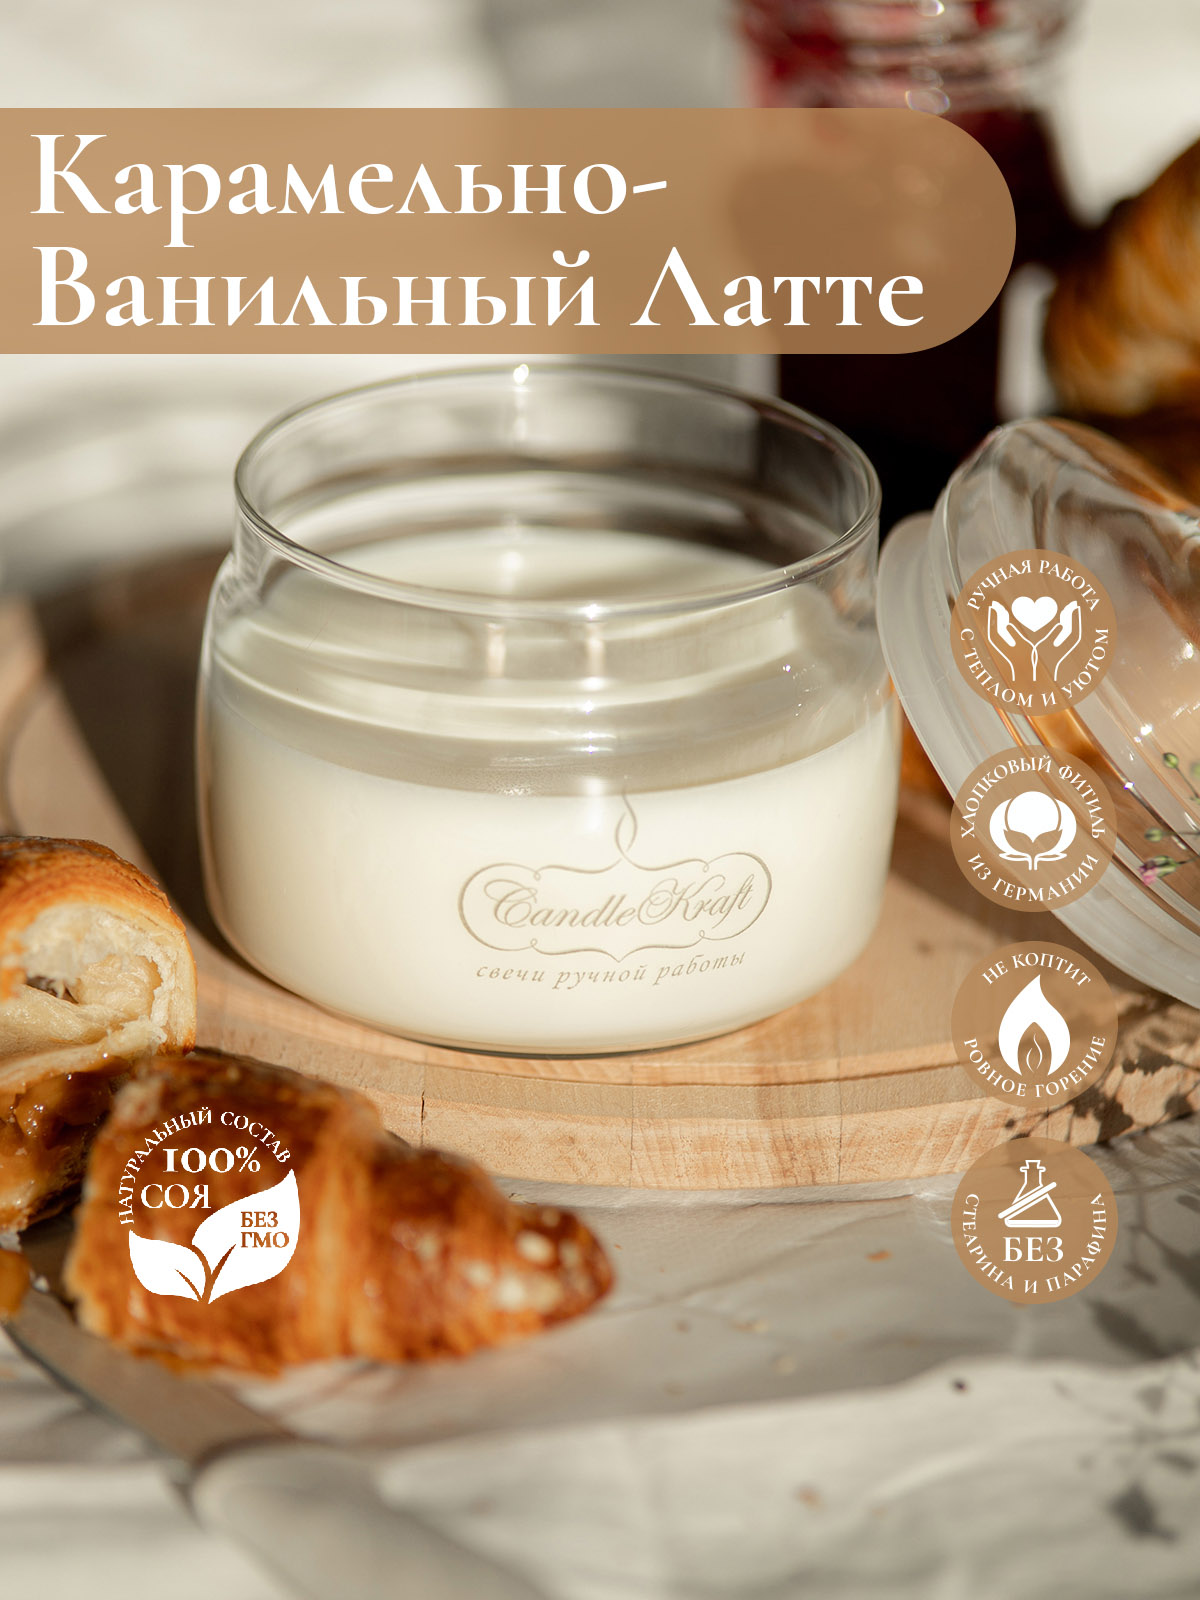 Свеча ароматическая CandleKraft Caramel Vanilla Latte HOME SPA "Карамельно-Ванильный Латте"